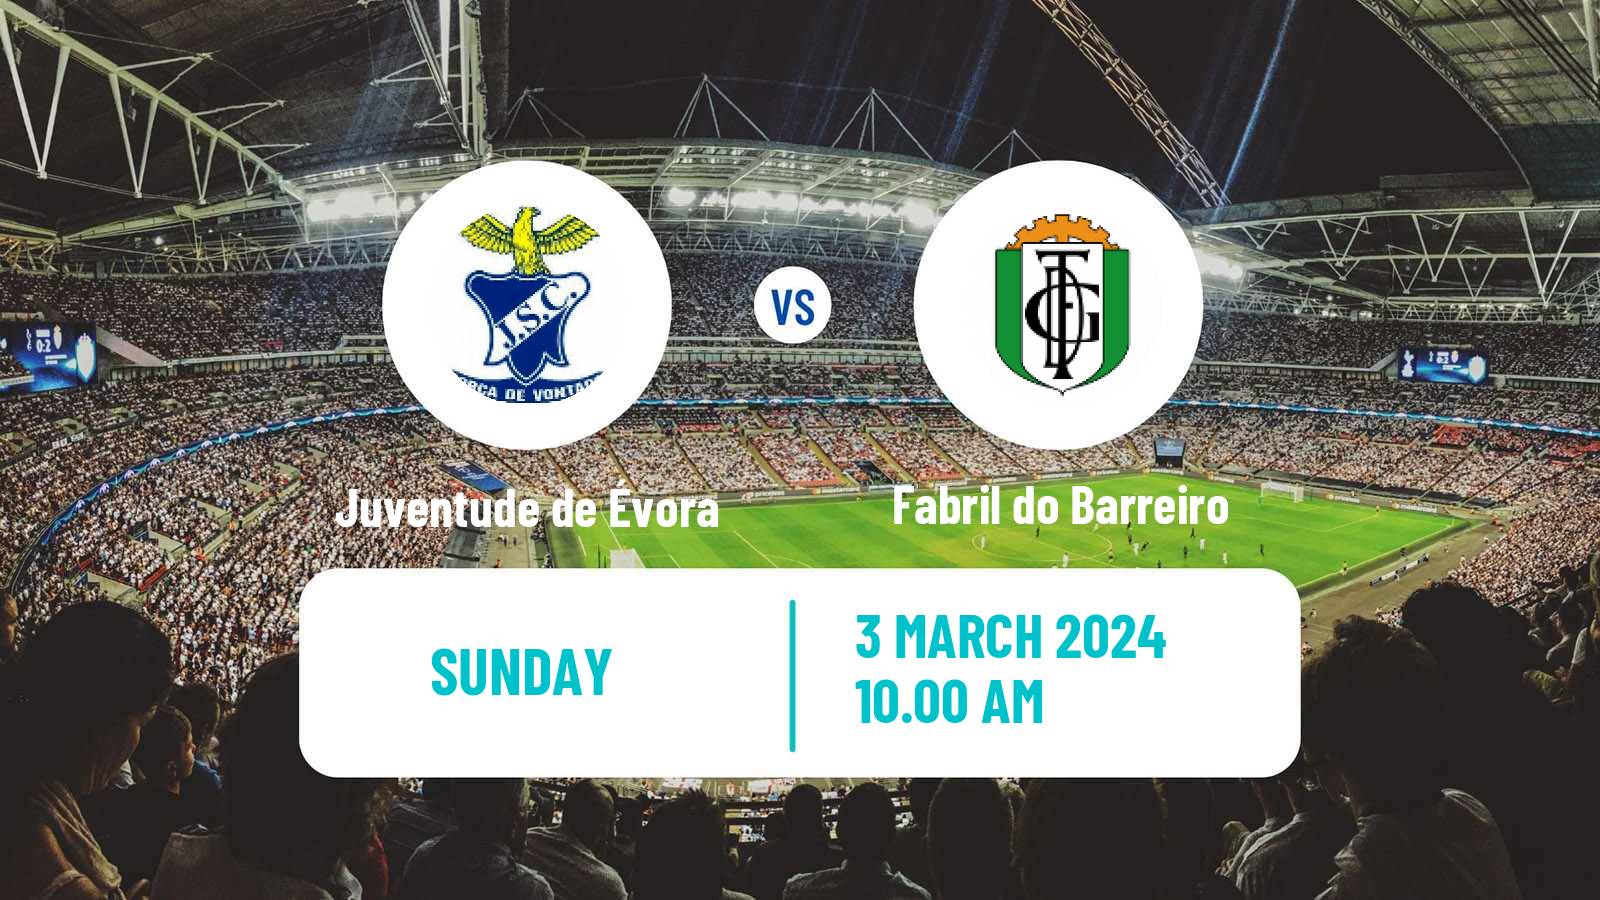 Soccer Campeonato de Portugal - Group D Juventude de Évora - Fabril do Barreiro